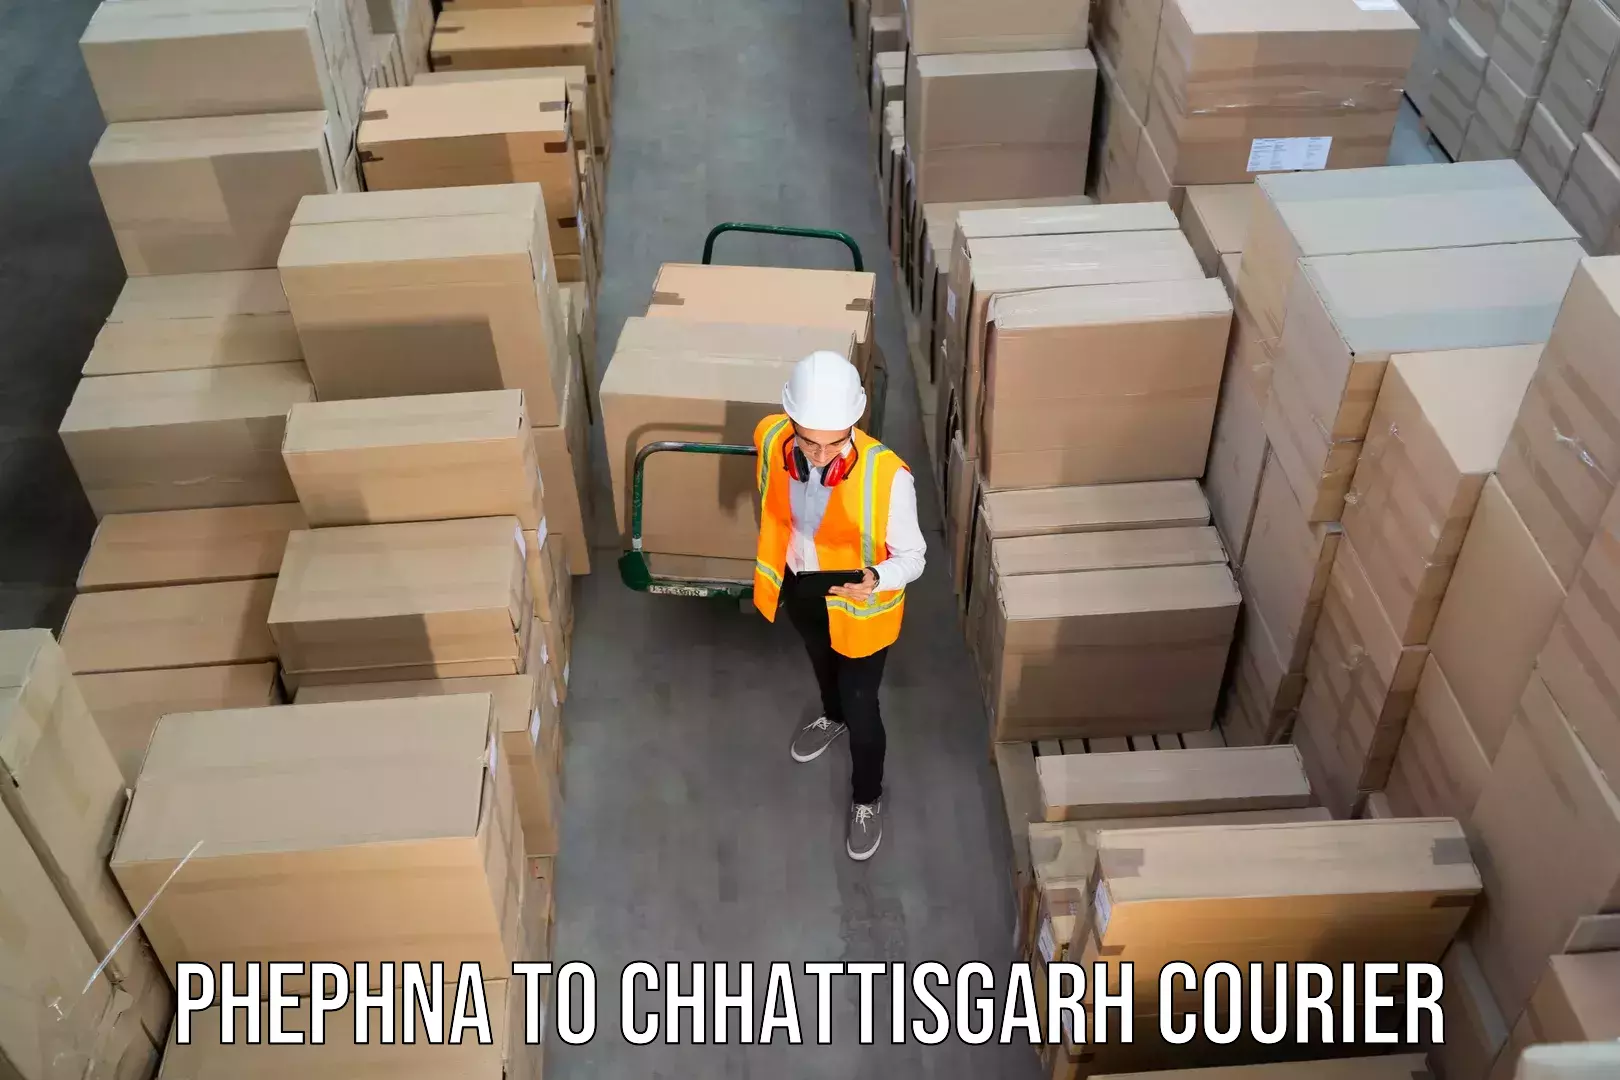 Courier service comparison Phephna to Raipur